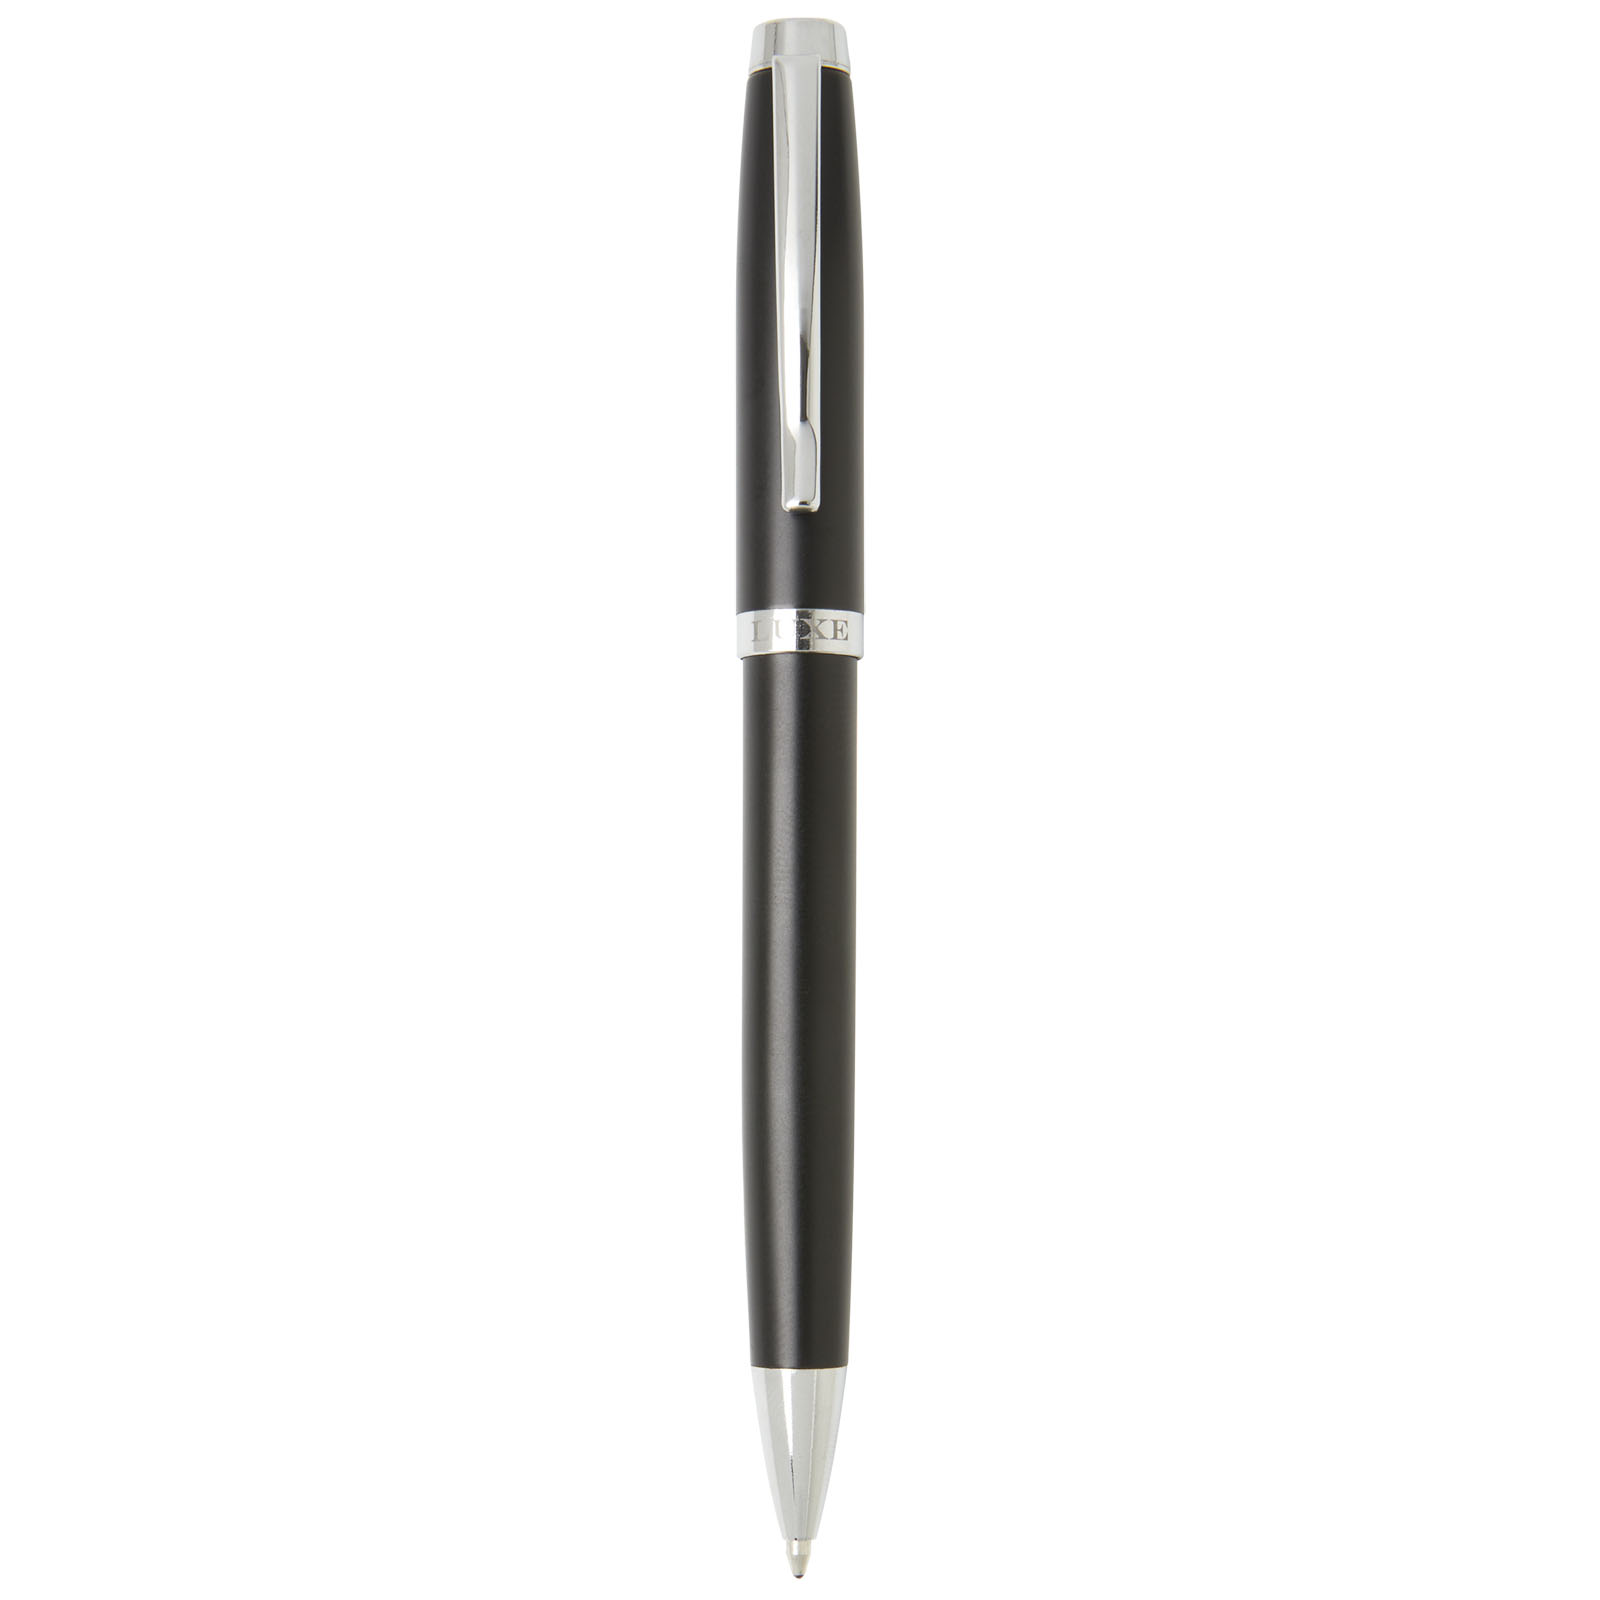 Advertising Ballpoint Pens - Vivace ballpoint pen  - 2